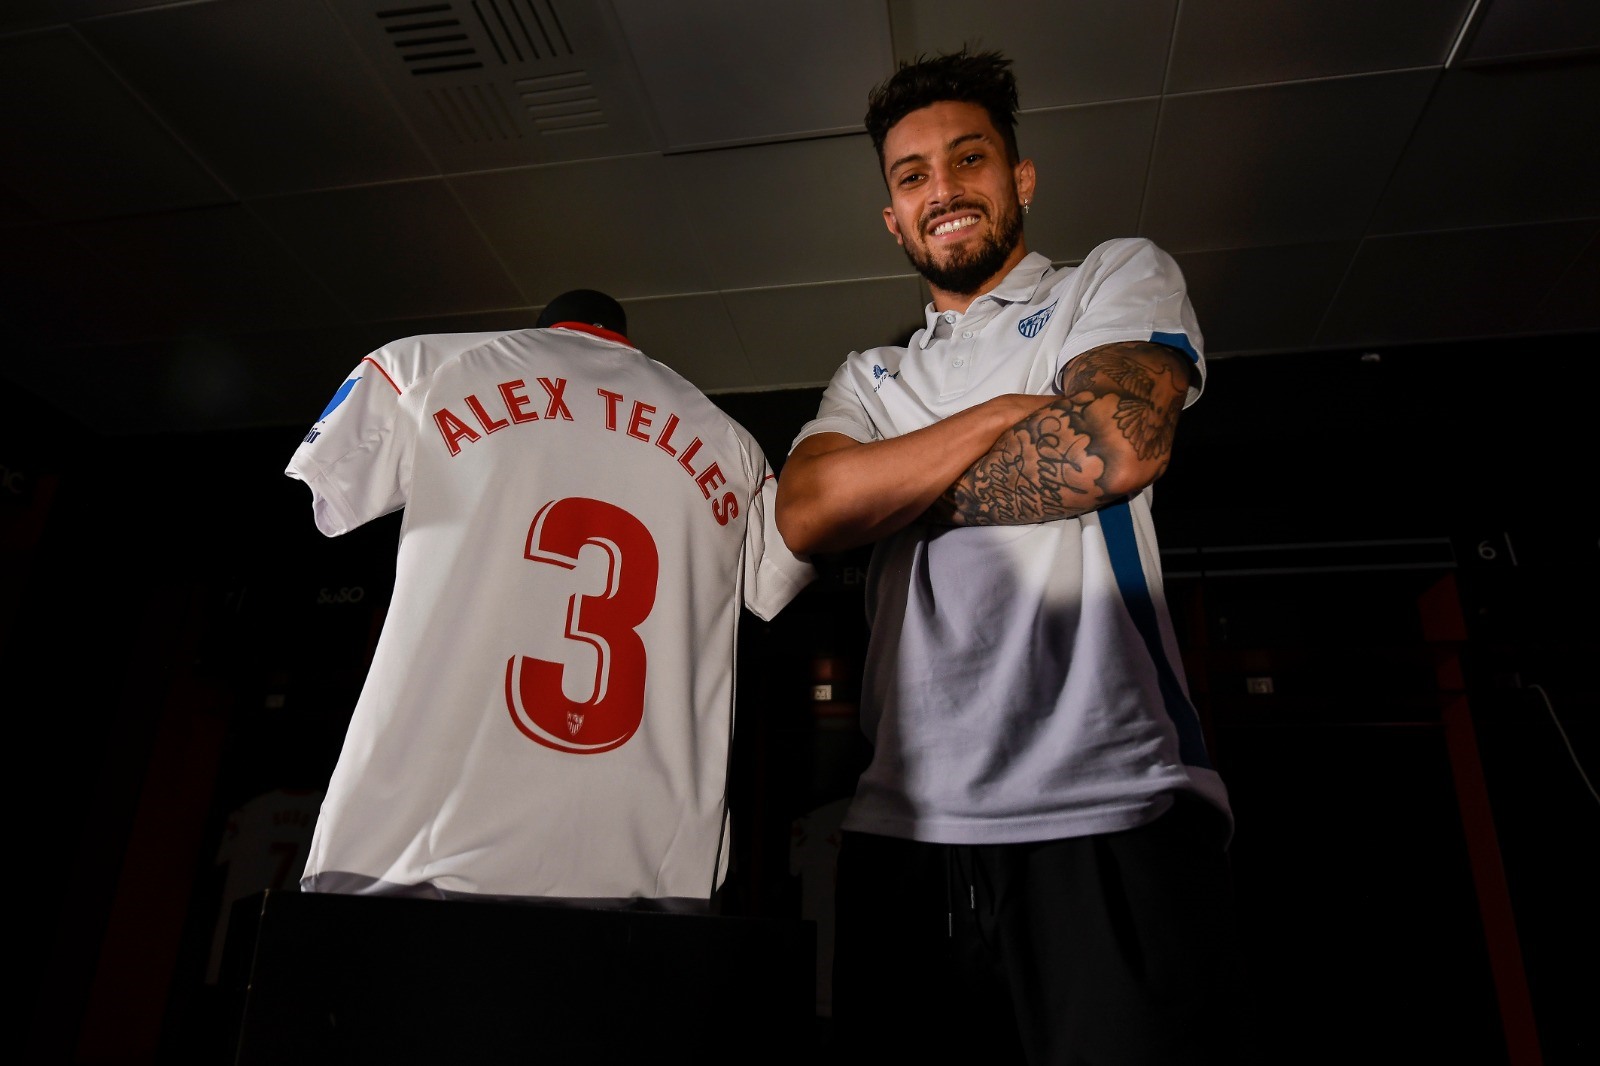 Telles đã sang Sevilla nhưng chưa chắc ở lại an toàn. Ảnh: AFP